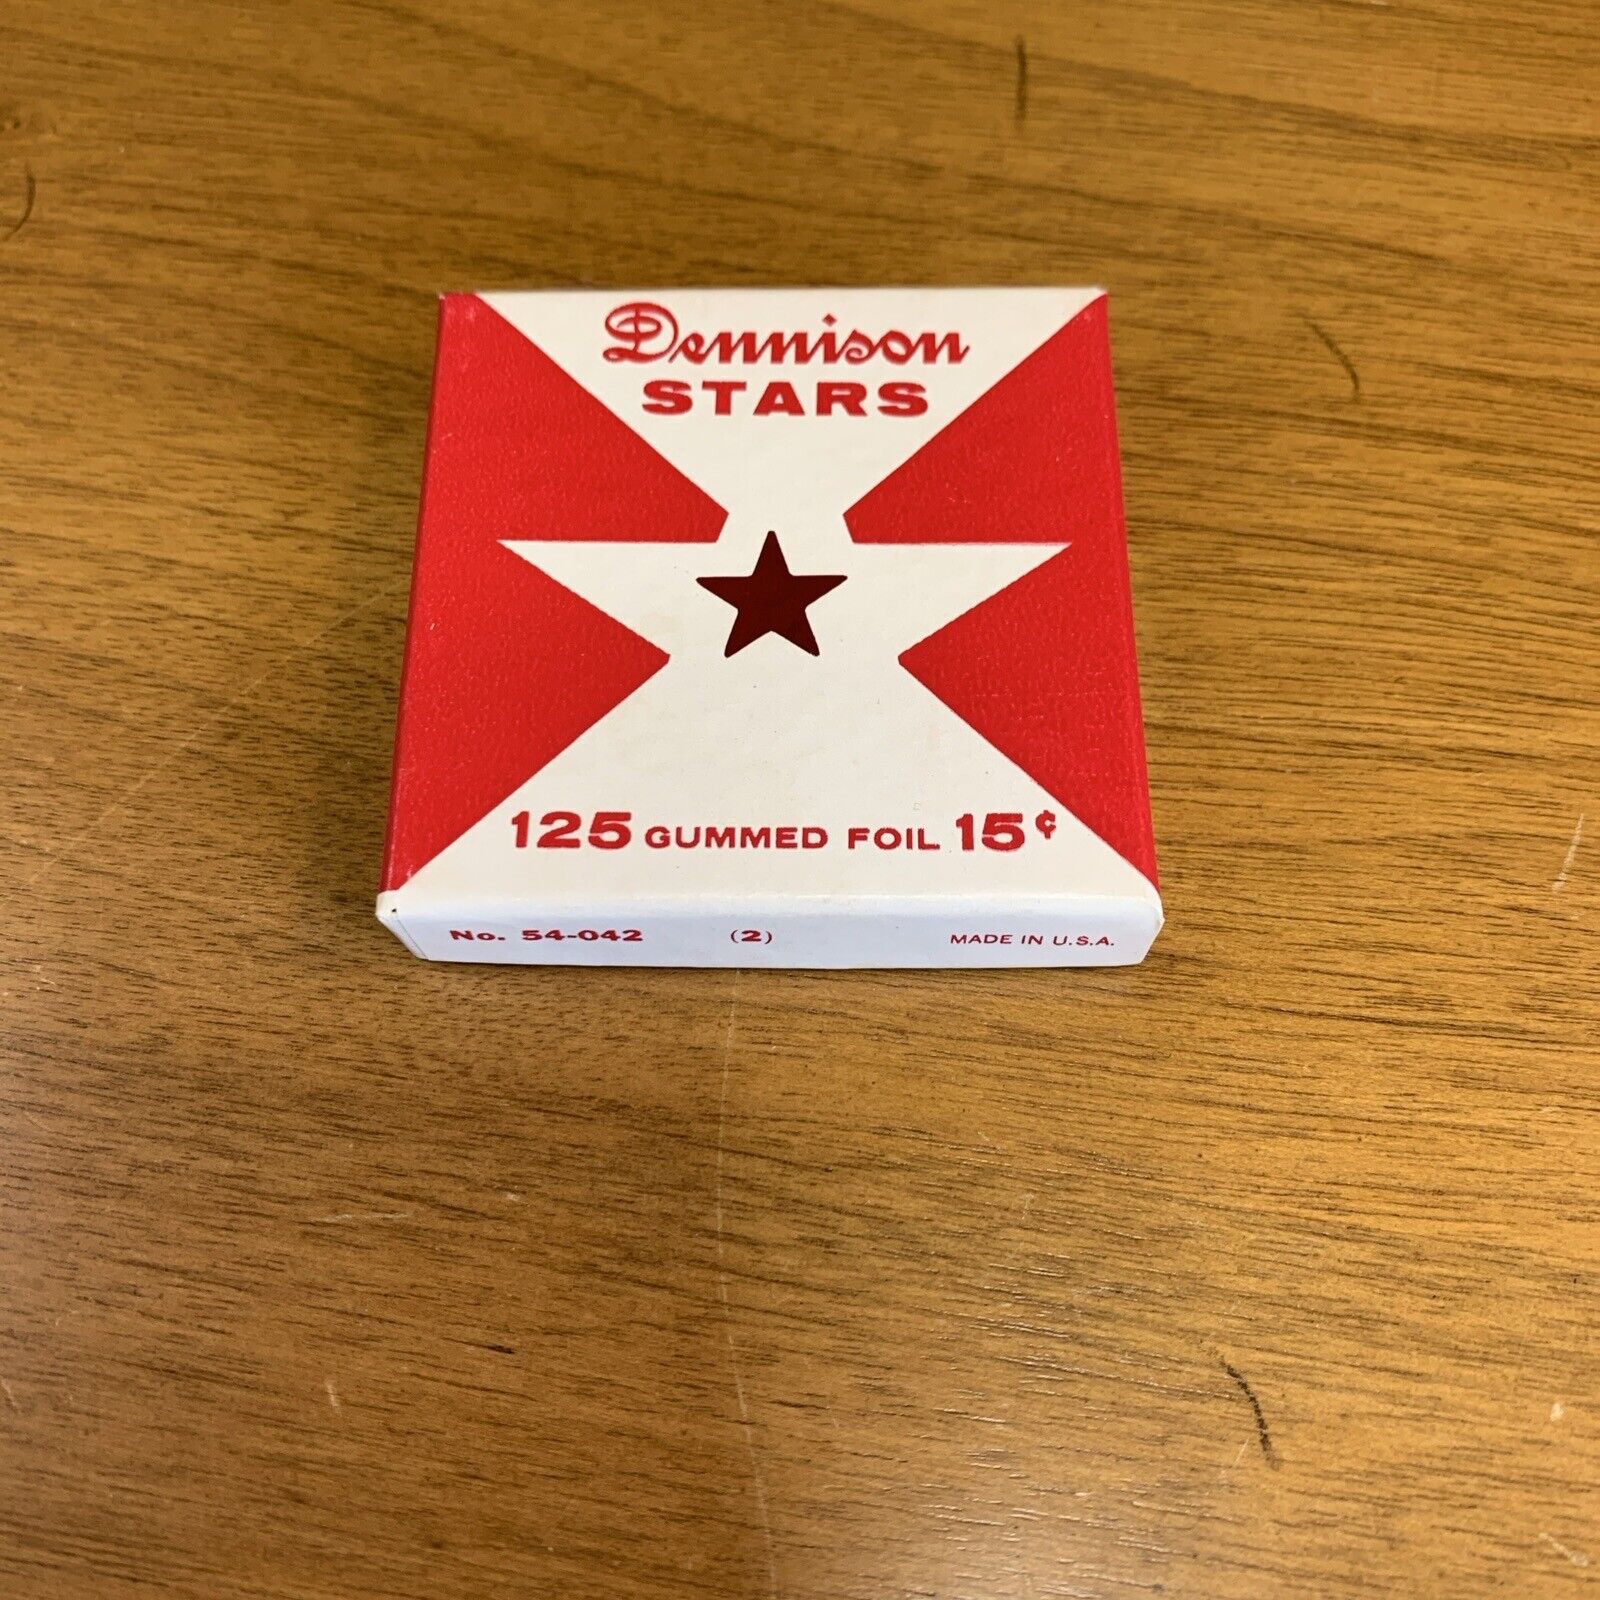 Vintage Dennison Gummed Red Foil Stars Partial Box Vintage 54-042